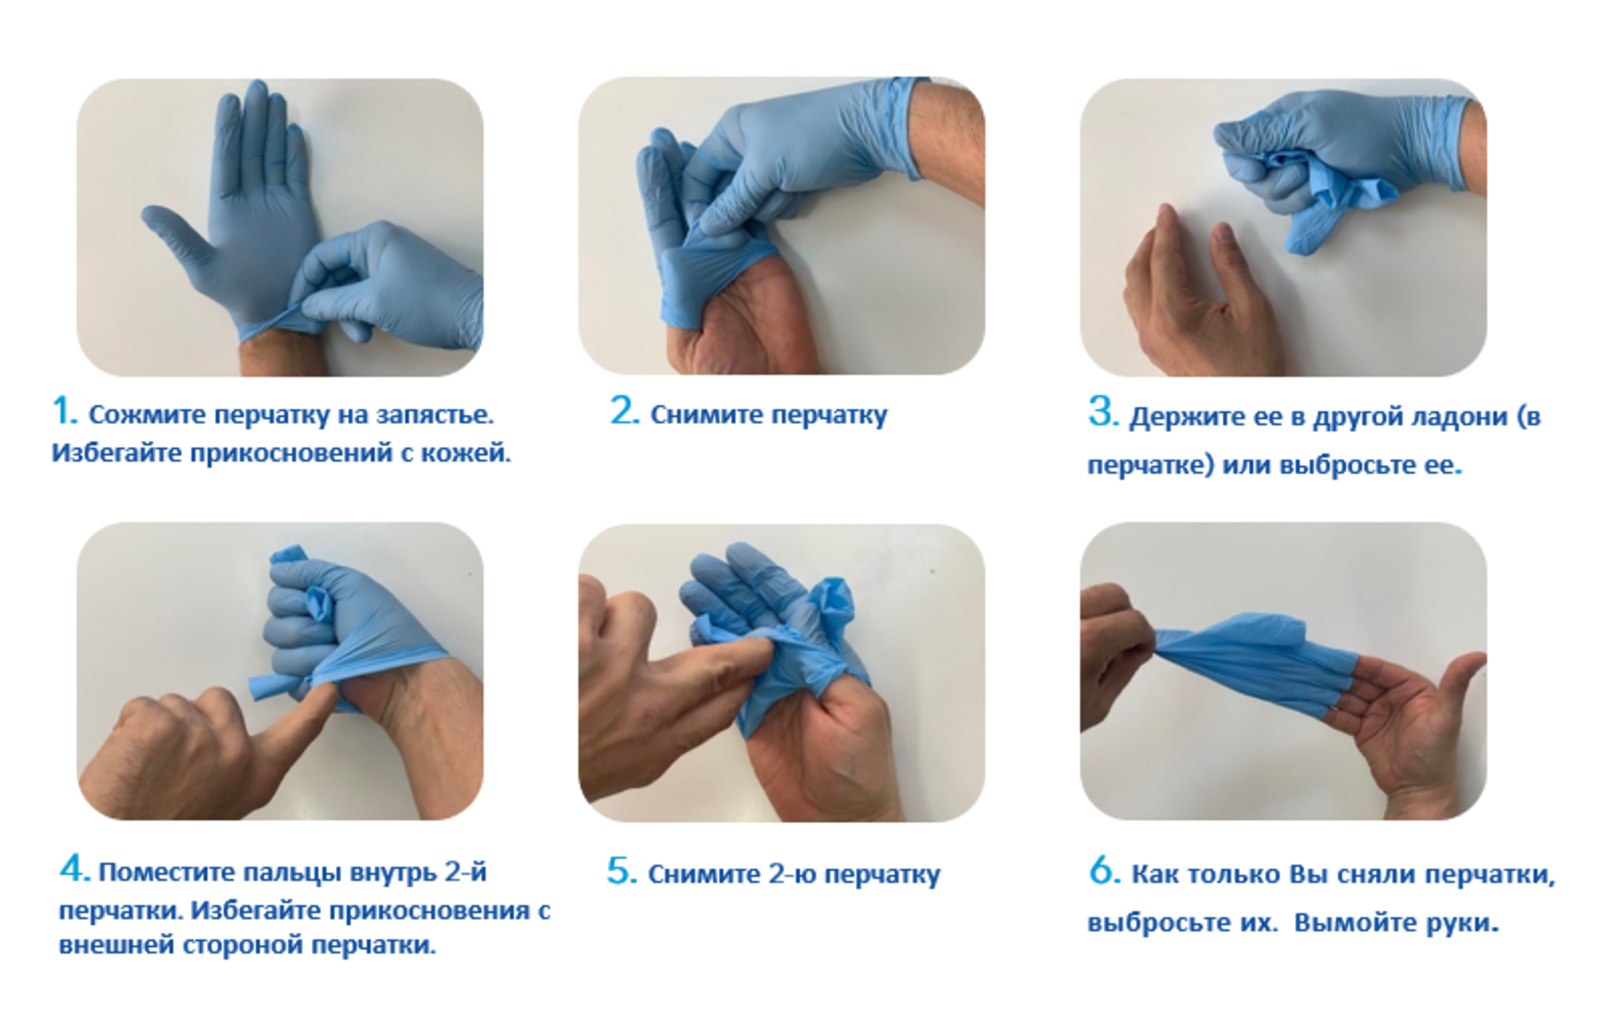 Алгоритм стерильных перчаток. Техника надевания стерильных перчаток. Алгоритм одевания и снятия перчаток медицинских. Алгоритм снимания стерильных перчаток. Правила одевания стерильных перчаток.